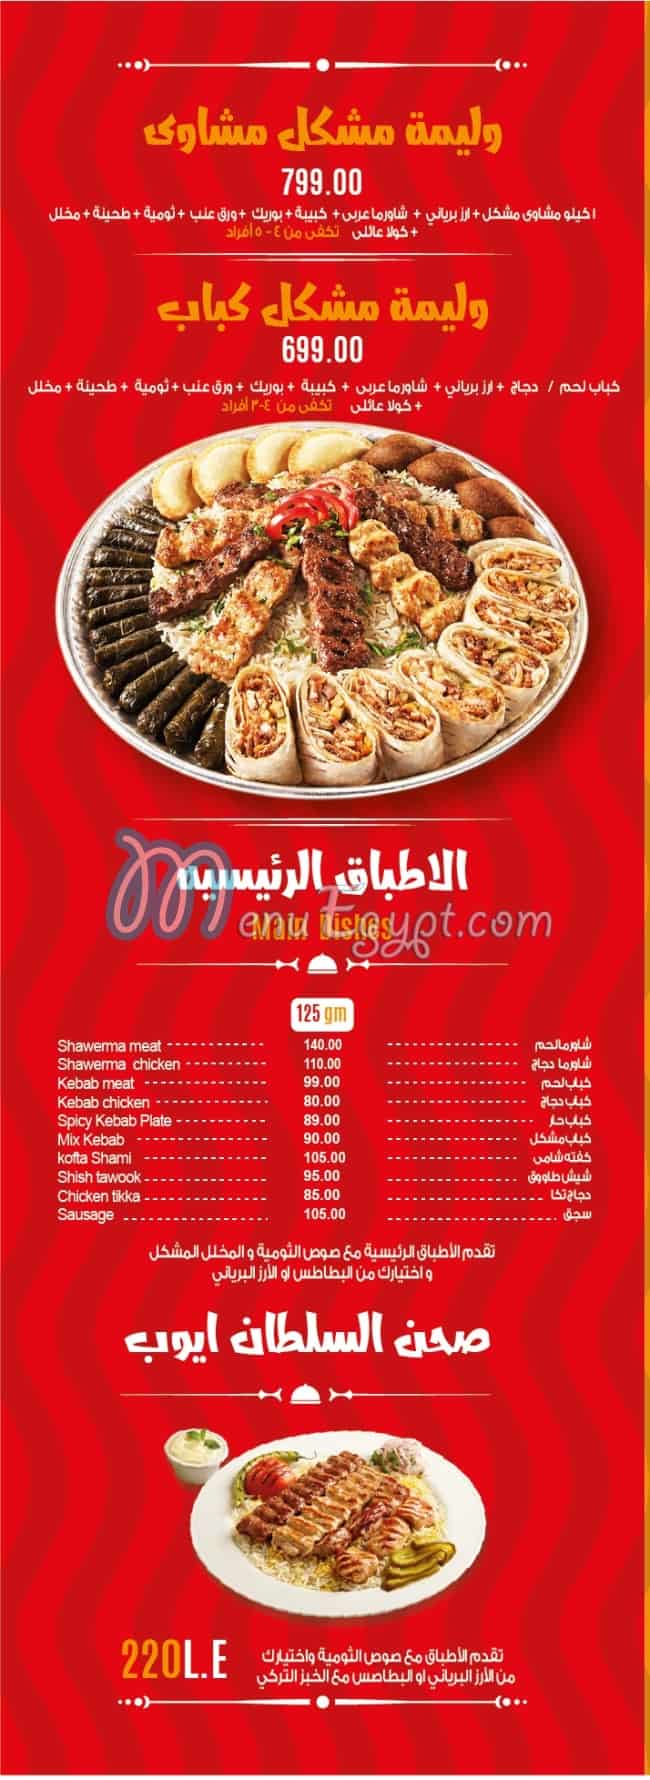 Sultan Ayub delivery menu